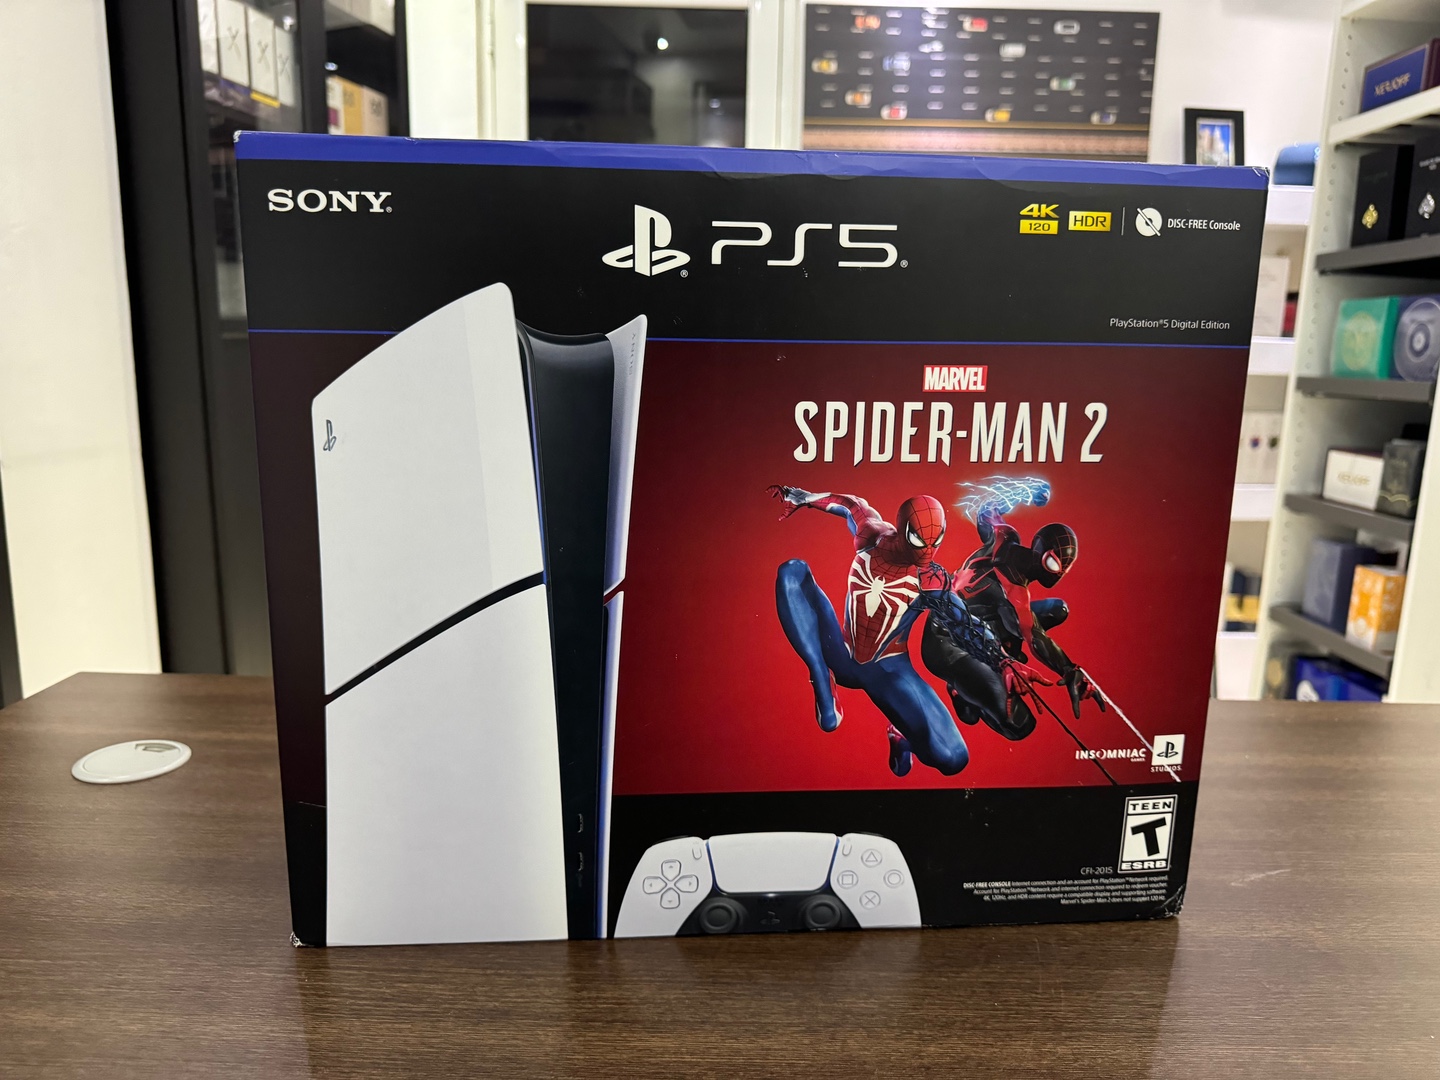 consolas y videojuegos - Consola Playstation 5 SLIM SpiderMan 2 Sellado Version Digital RD$ 30,500 NEG